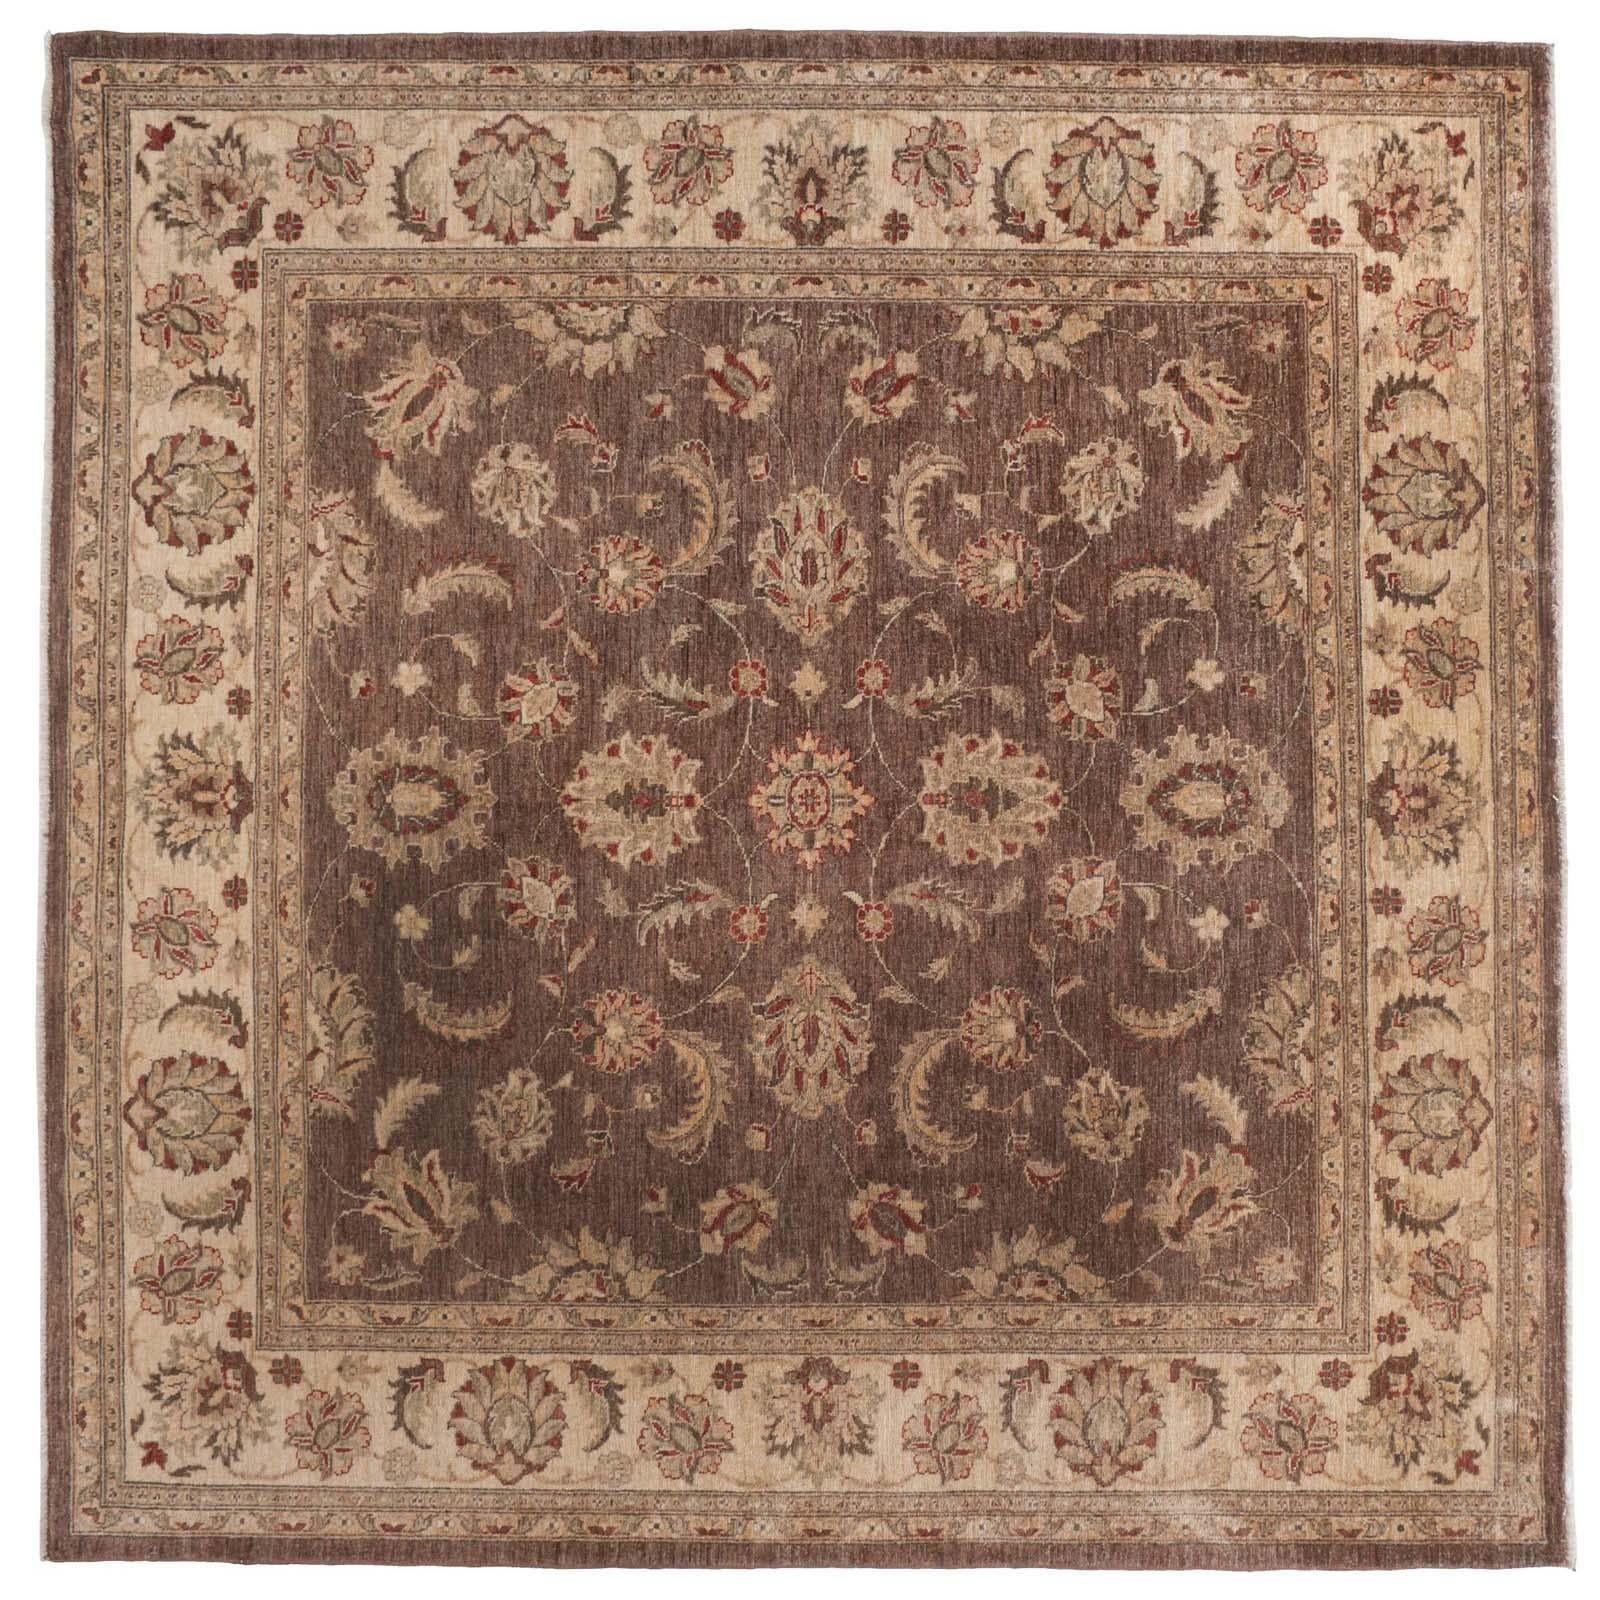 Traditioneller brauner quadratischer pakistanischer Teppich